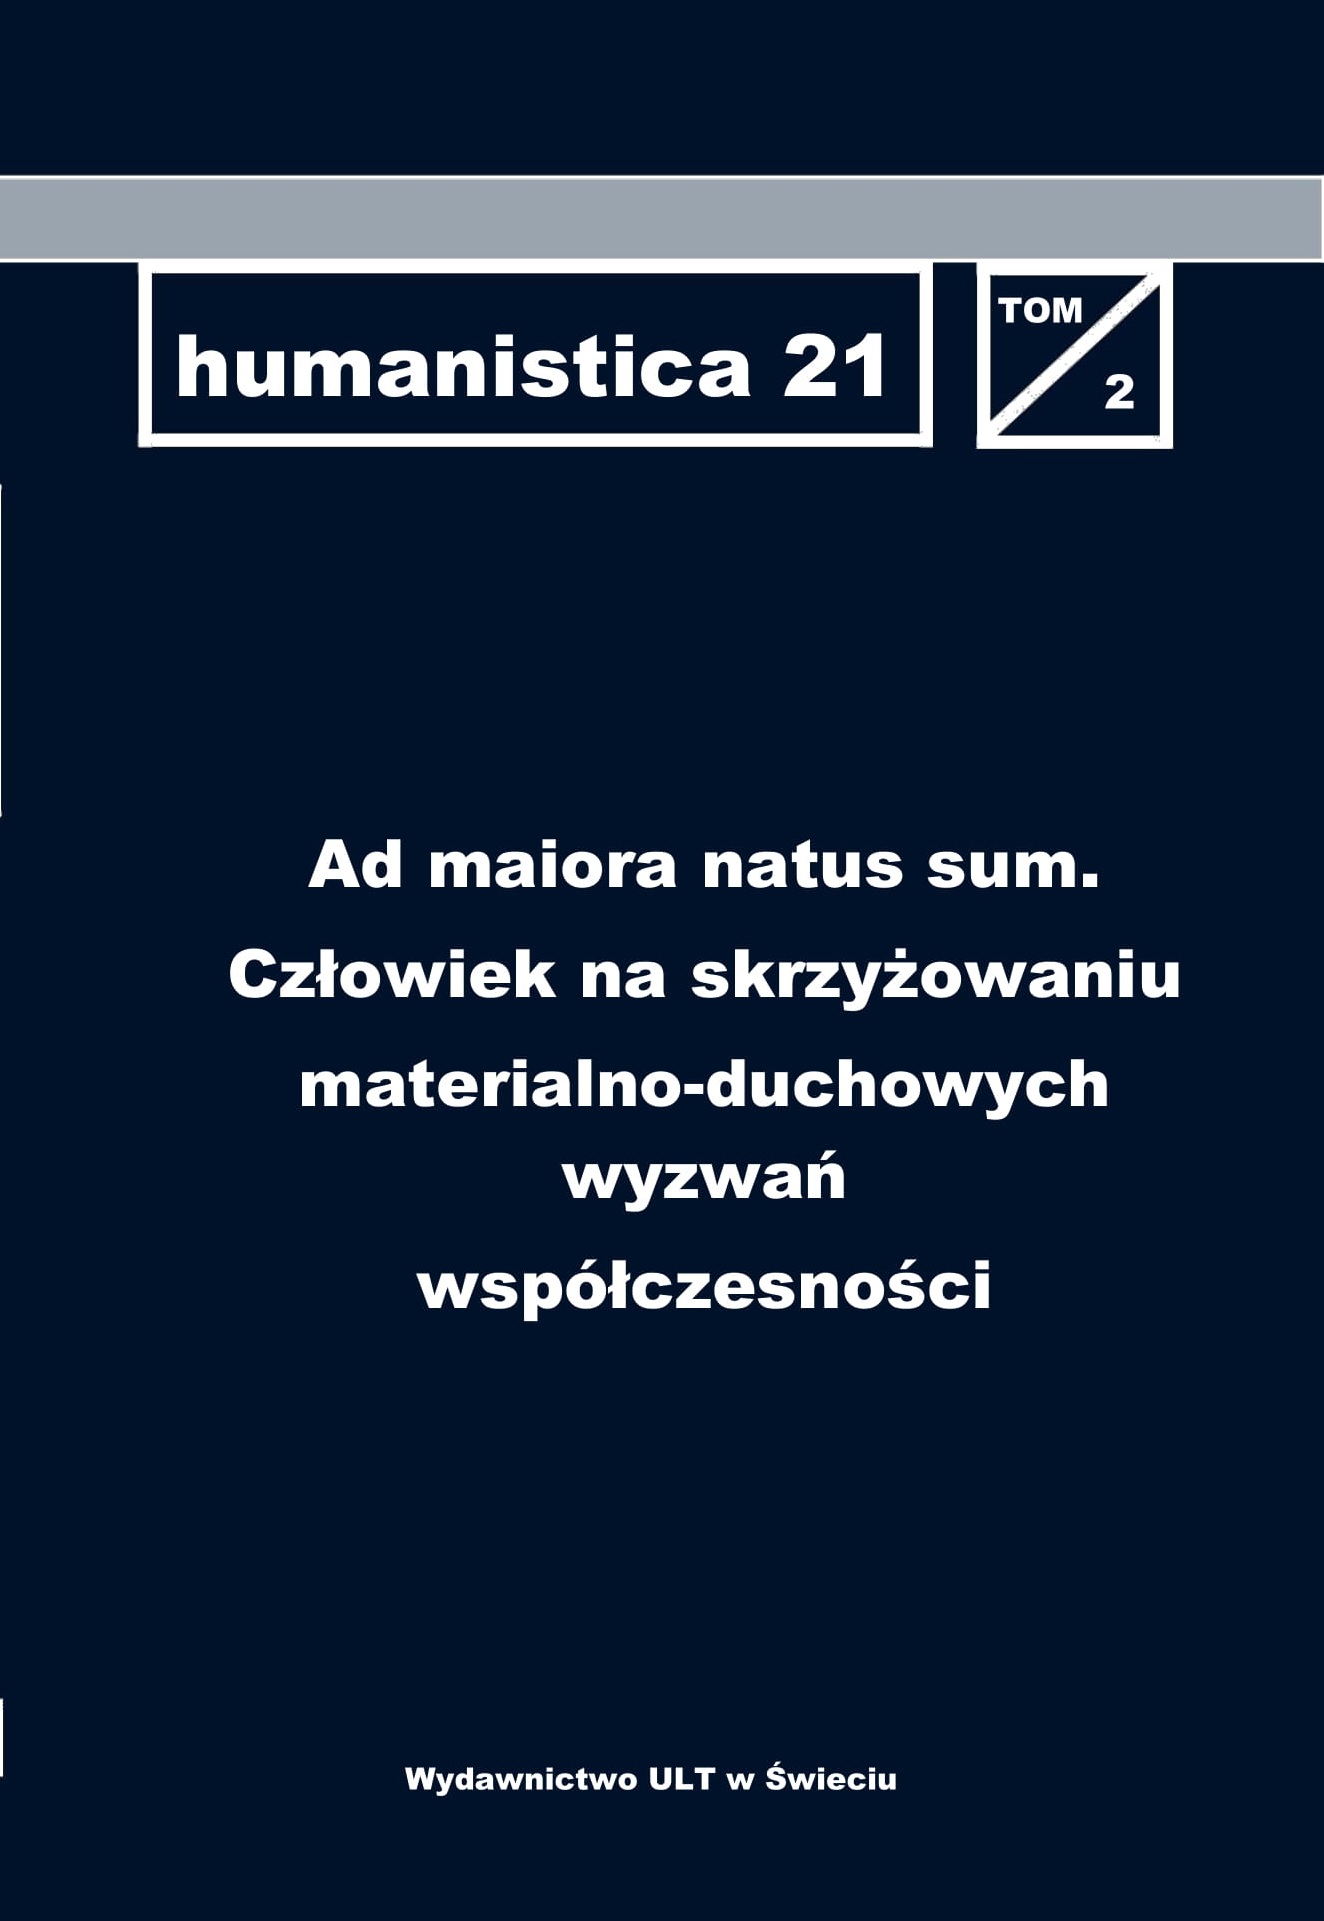 humanistica 21